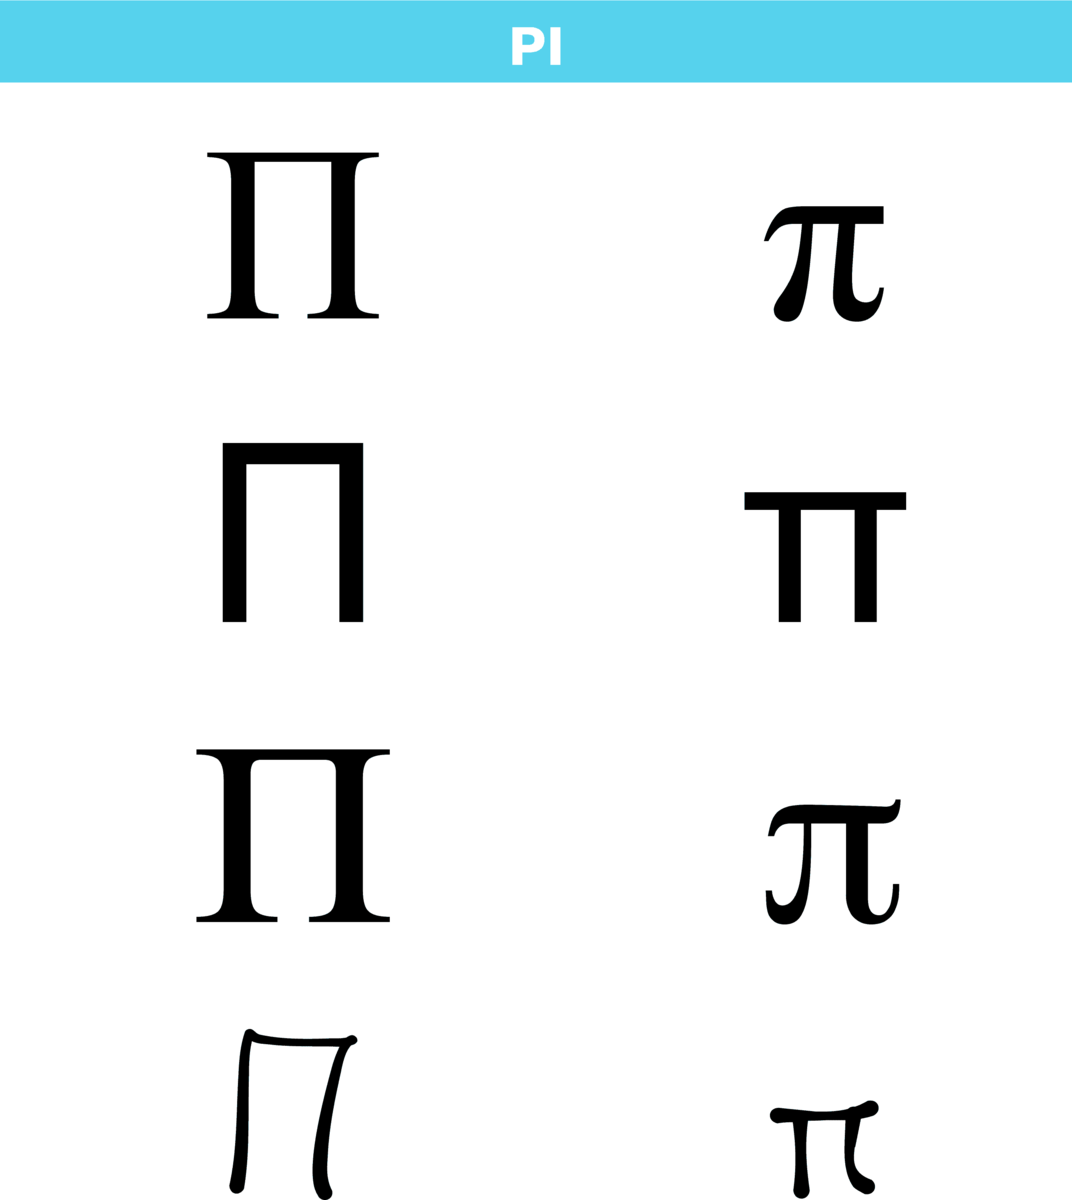 Bokstaven pi i det greske alfabetet i ulike skrifttyper